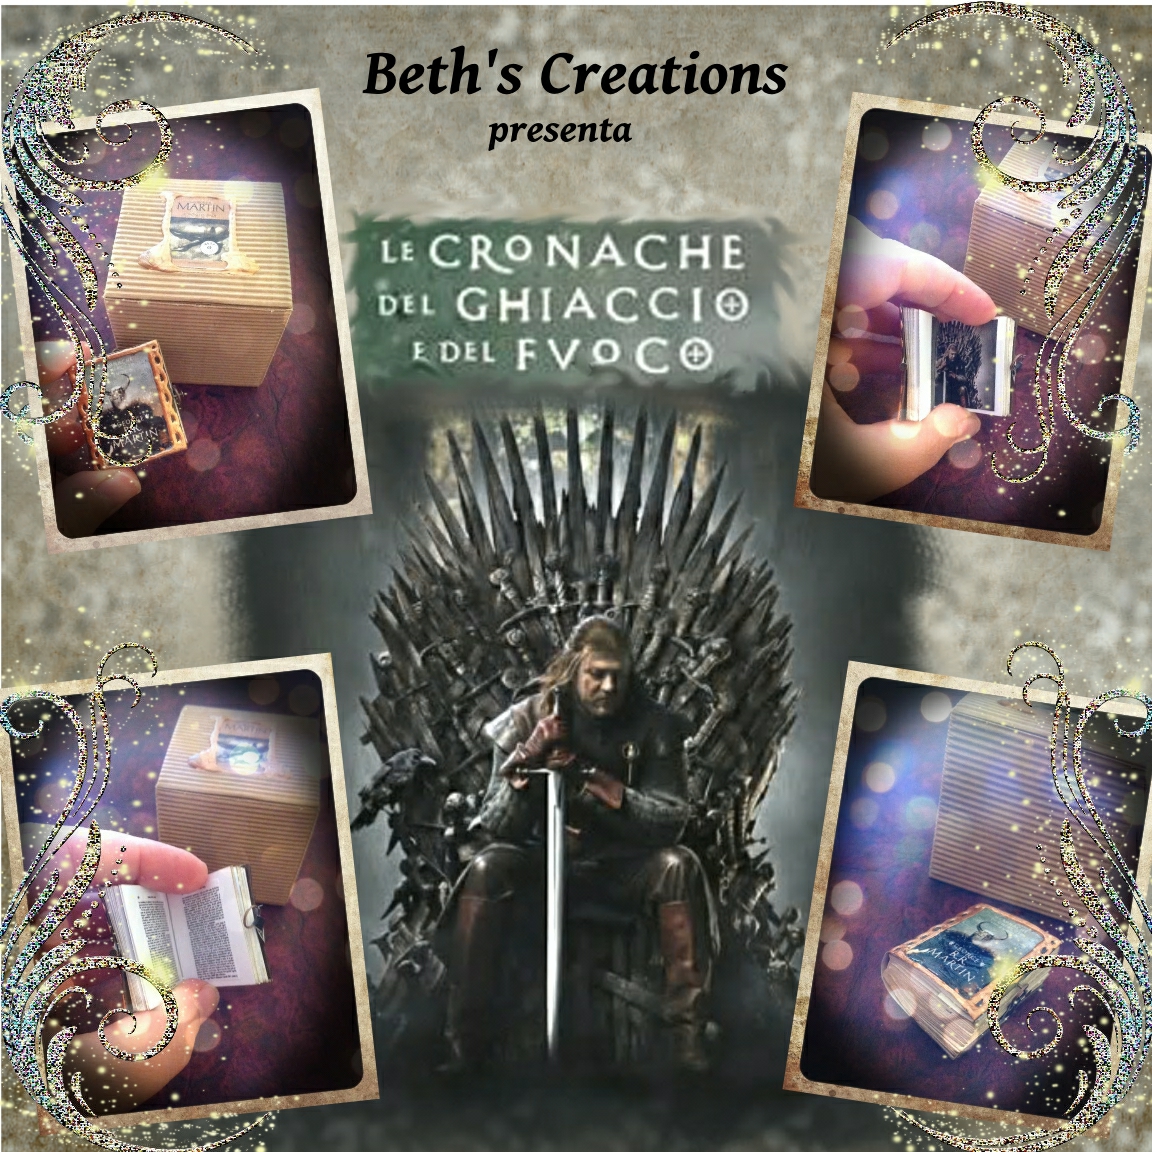 Beth's Creations www.bethscreations.it Le Cronache del Ghiaccio e del Fuoco... una rivelazione!